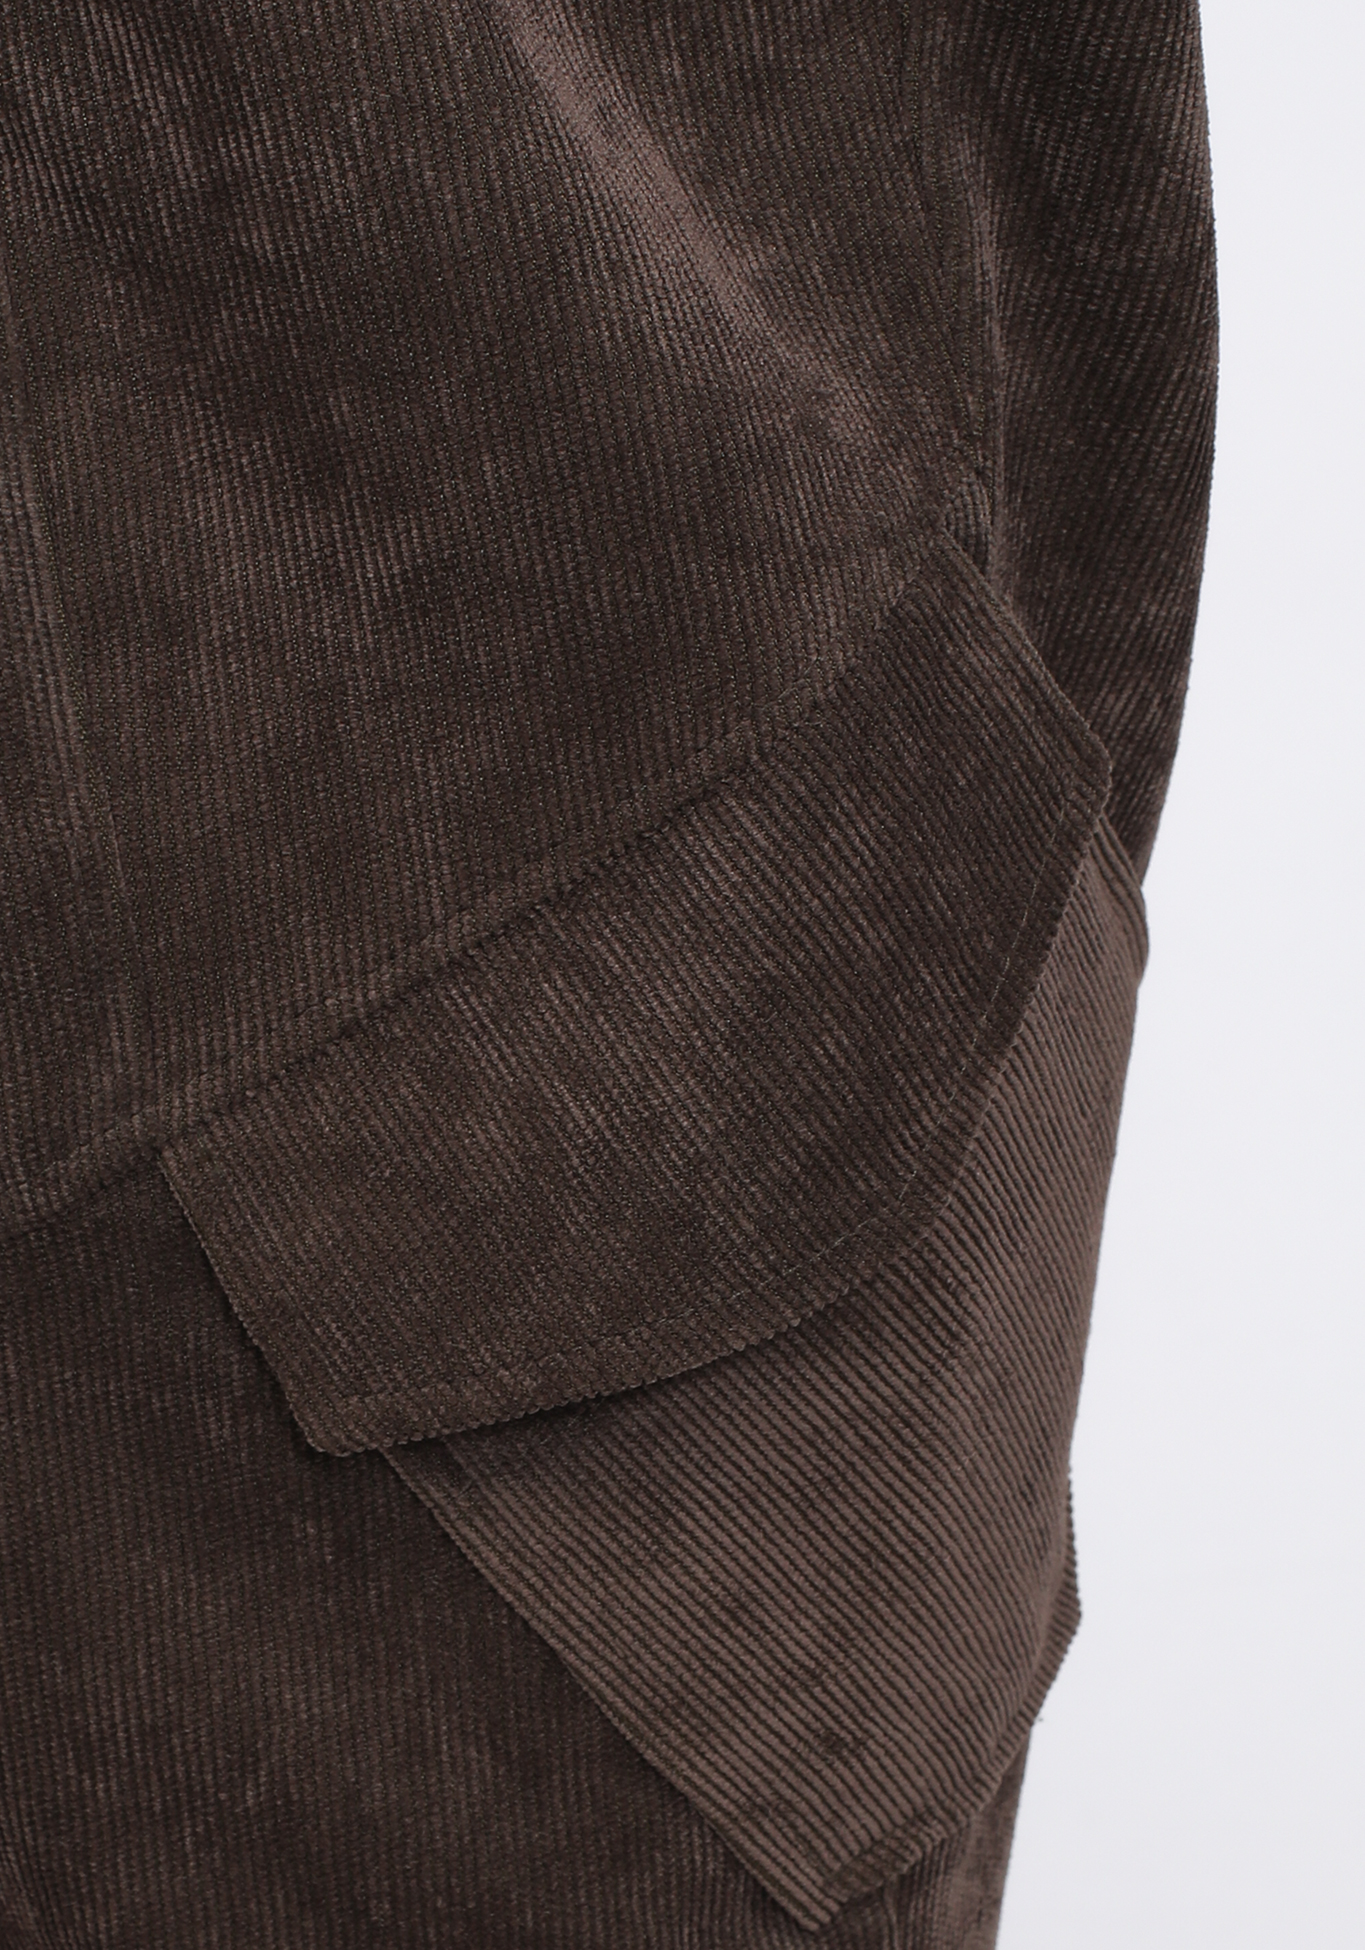 Брюки вельветовые с карманами GalaGrosso, размер 50, цвет бежевый - фото 5